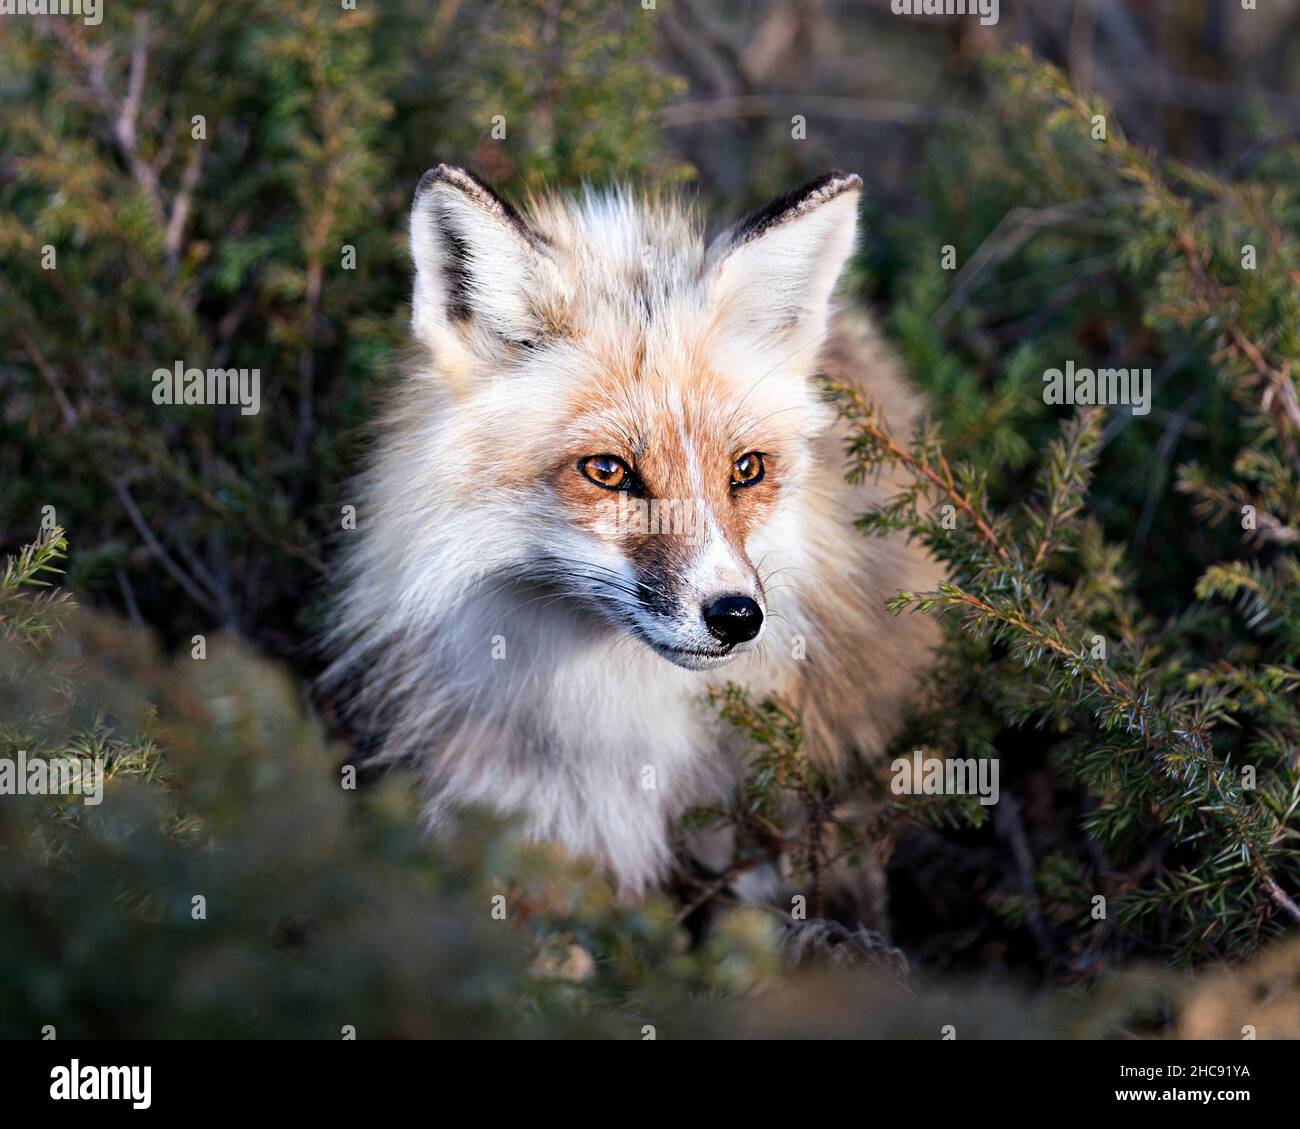 Vue en gros plan de la tête du renard rouge entourant les branches d'aiguille conifères et regardant la caméra dans son environnement.Prise de vue.Fox image.Photo. Banque D'Images